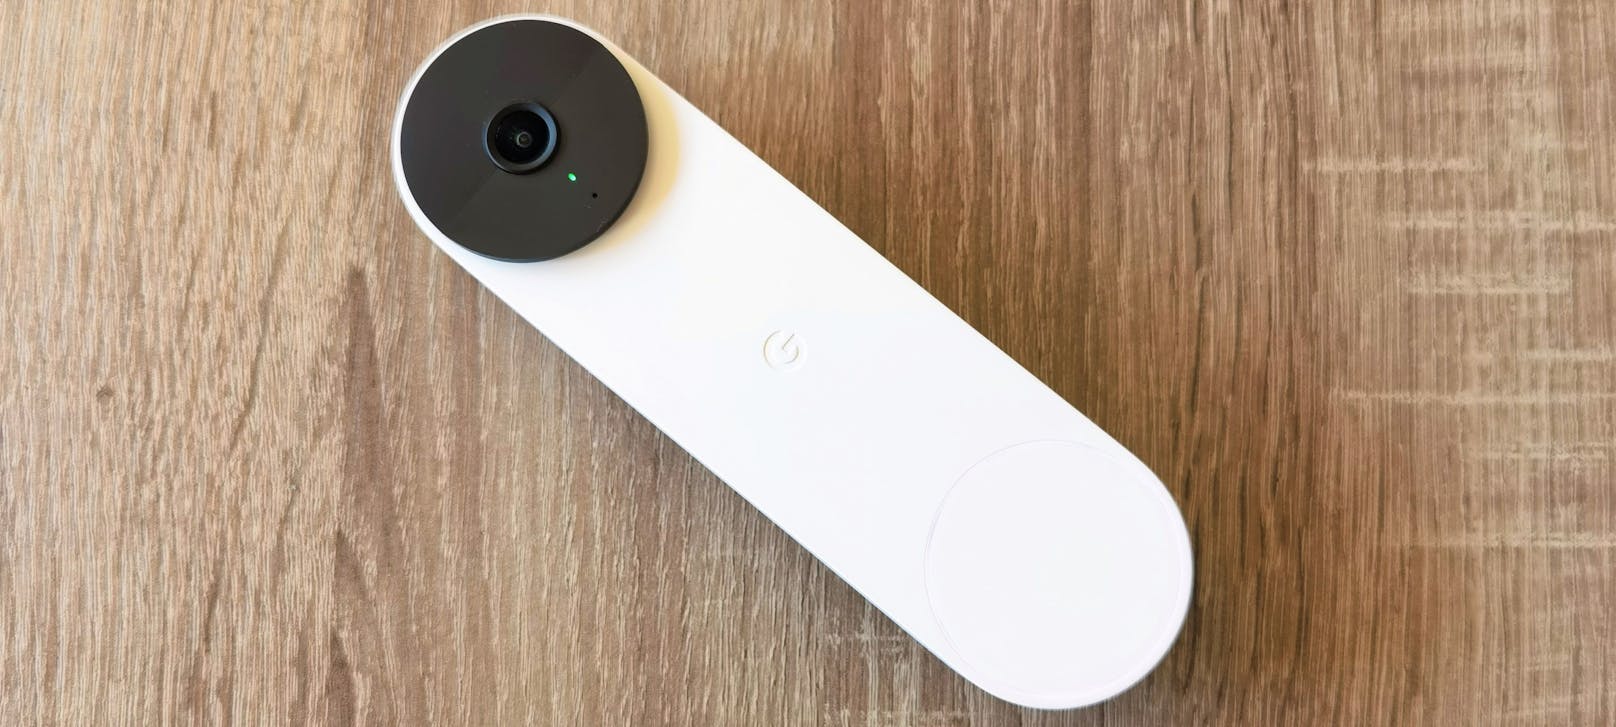 Google Nest Doorbell im Test: Immer wissen, wer läutet